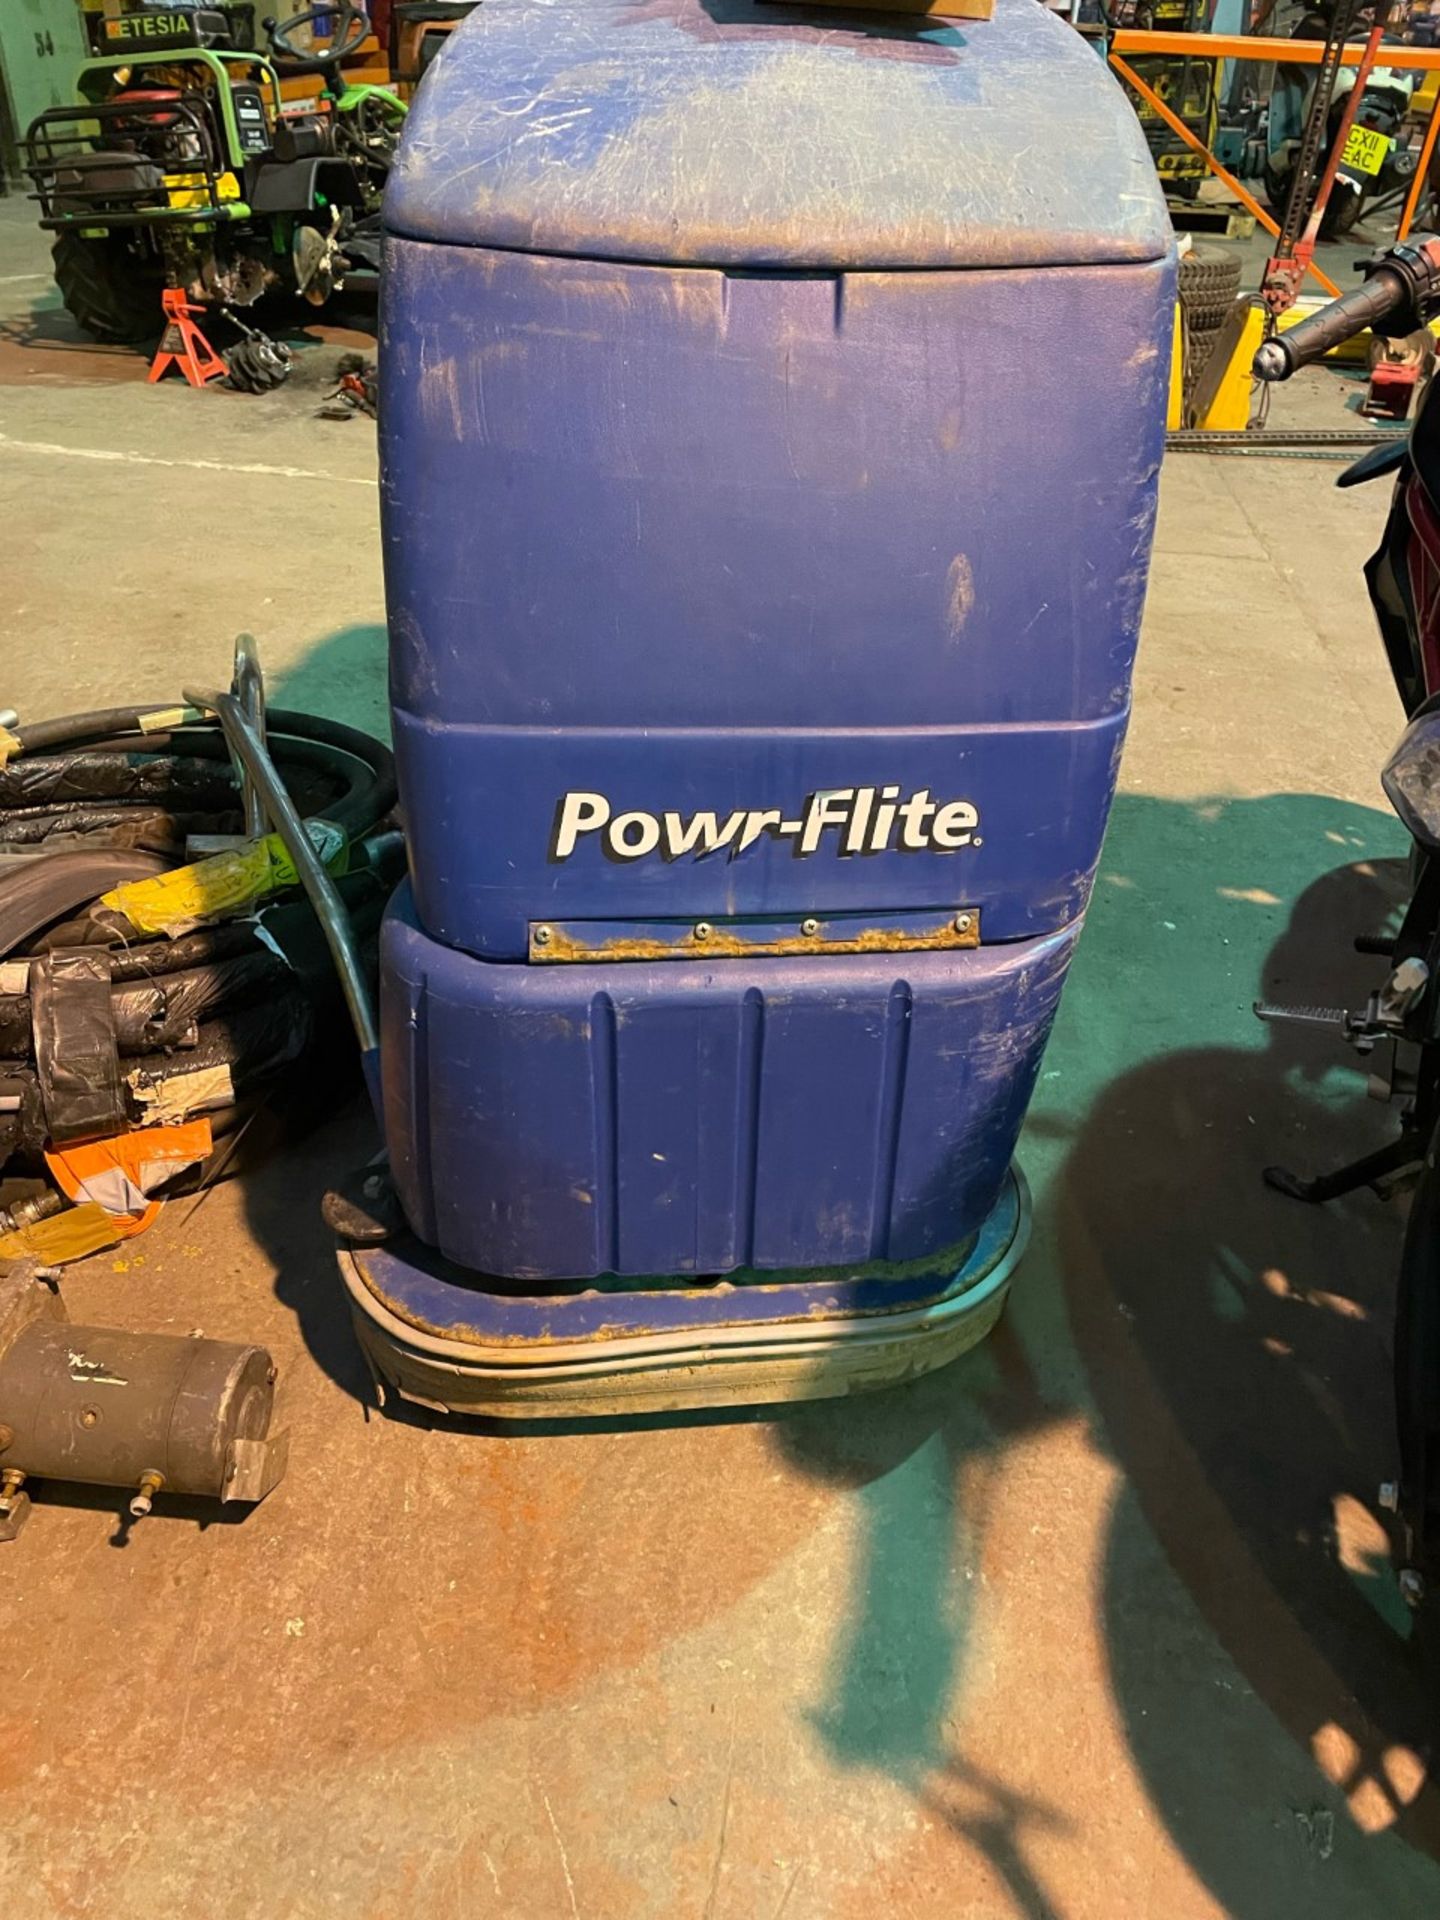 Power flite predator 22 floor scrubber cleaner. Spares or repair.